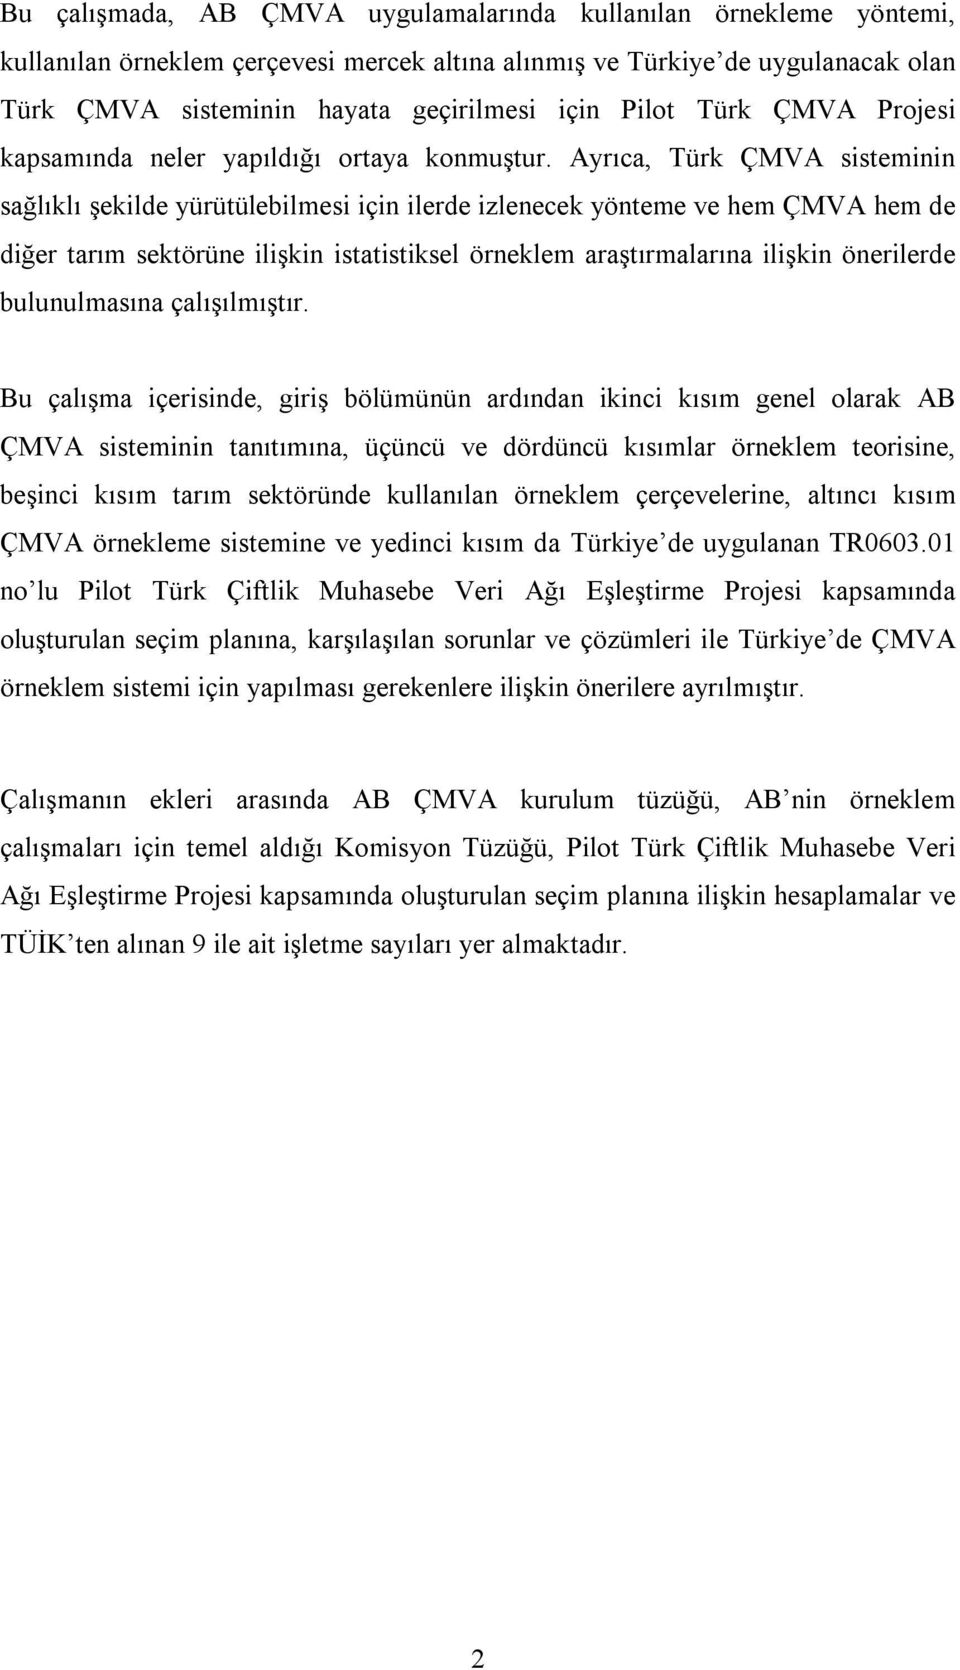 Ayrıca, Türk ÇMVA sisteminin sağlıklı şekilde yürütülebilmesi için ilerde izlenecek yönteme ve hem ÇMVA hem de diğer tarım sektörüne ilişkin istatistiksel örneklem araştırmalarına ilişkin önerilerde